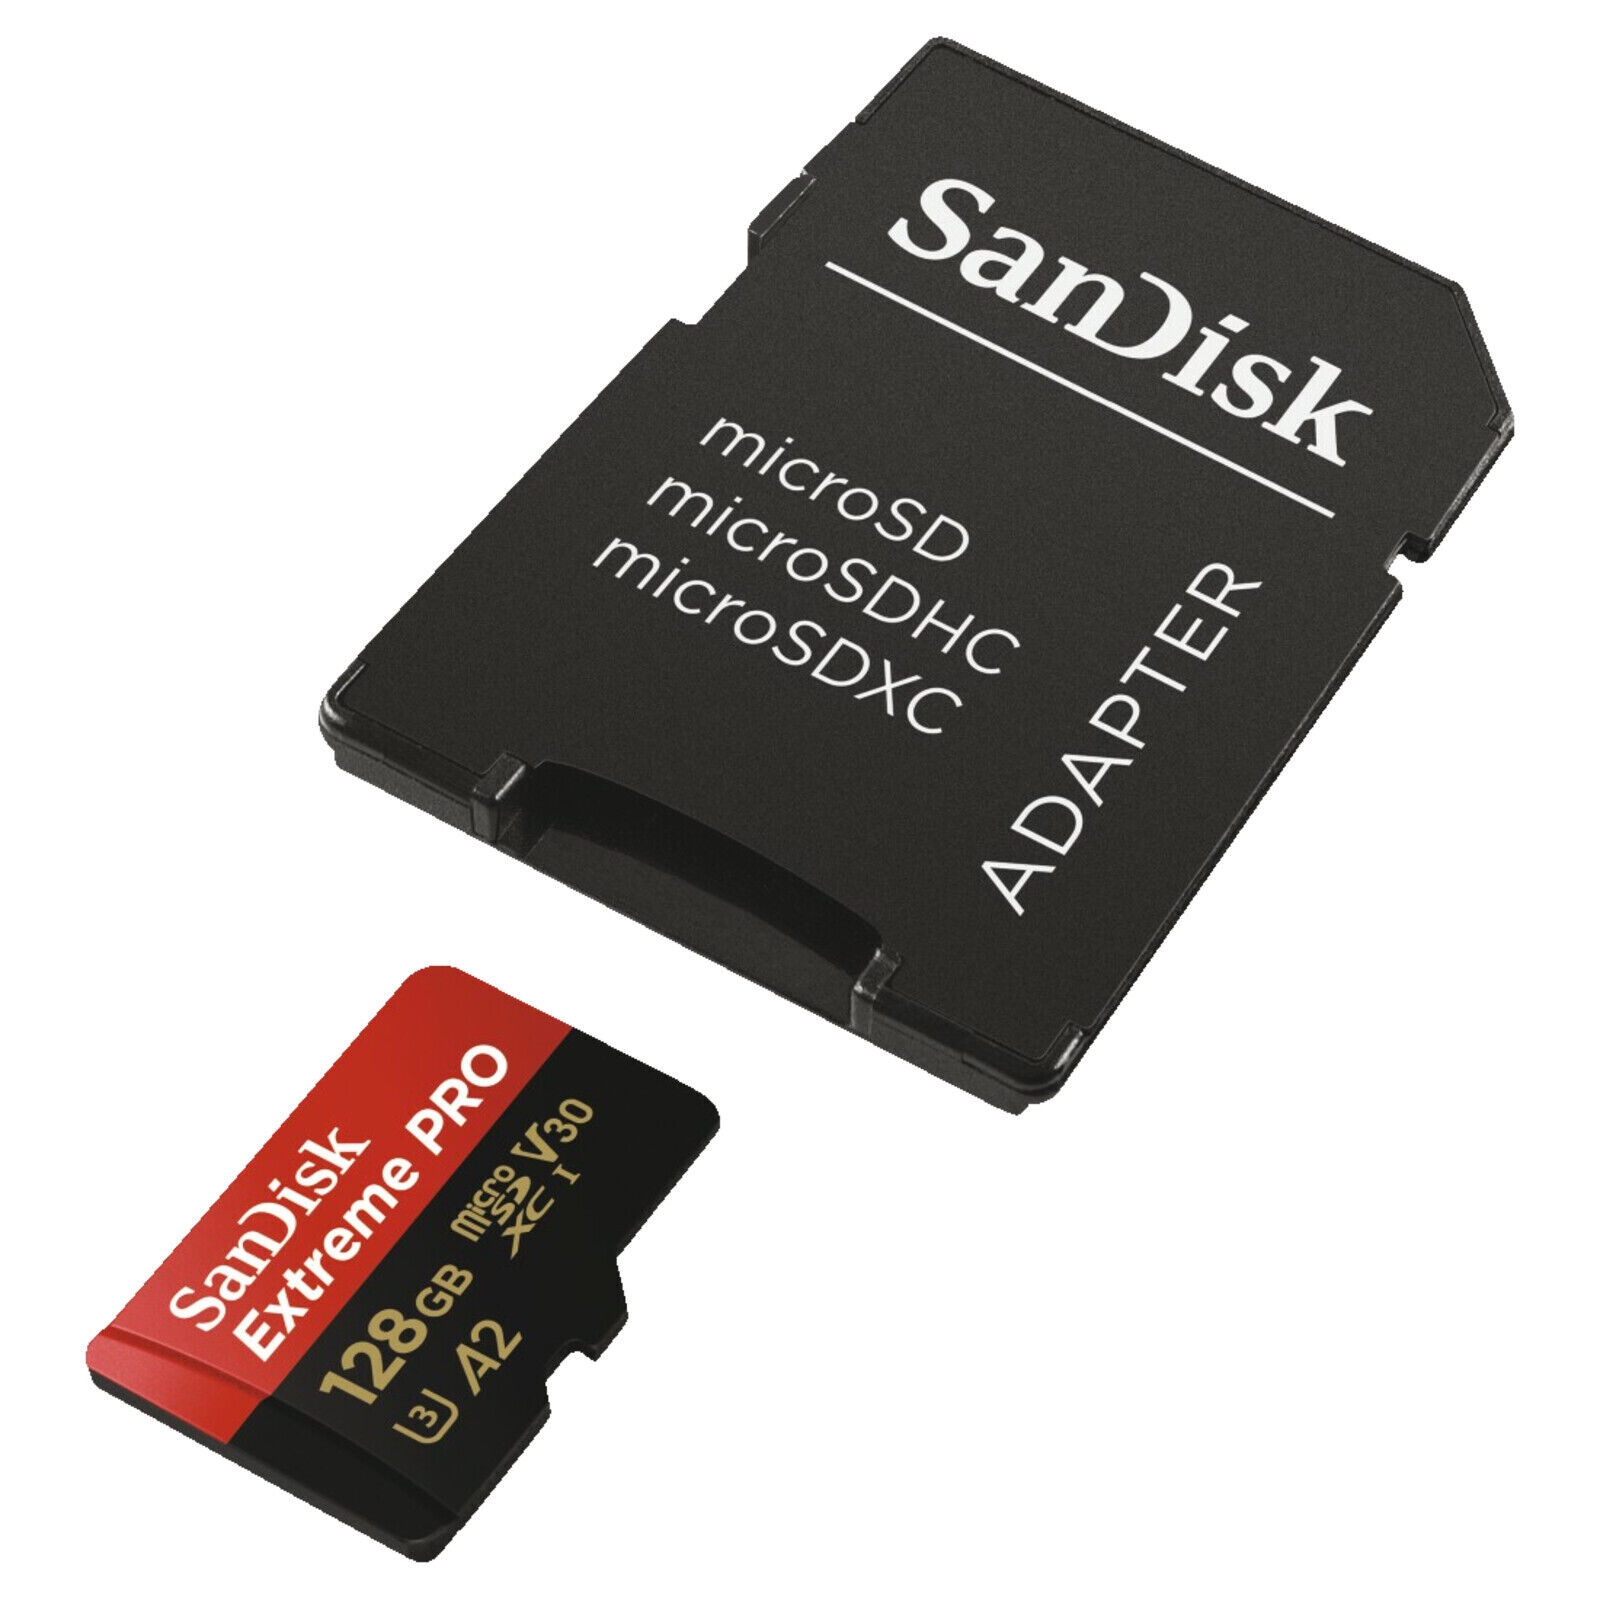 Bild zu 128GB Micro-SDXC Speicherkarte Sandisk Extreme Pro für 19,99€ (Vergleich: 24,94€)